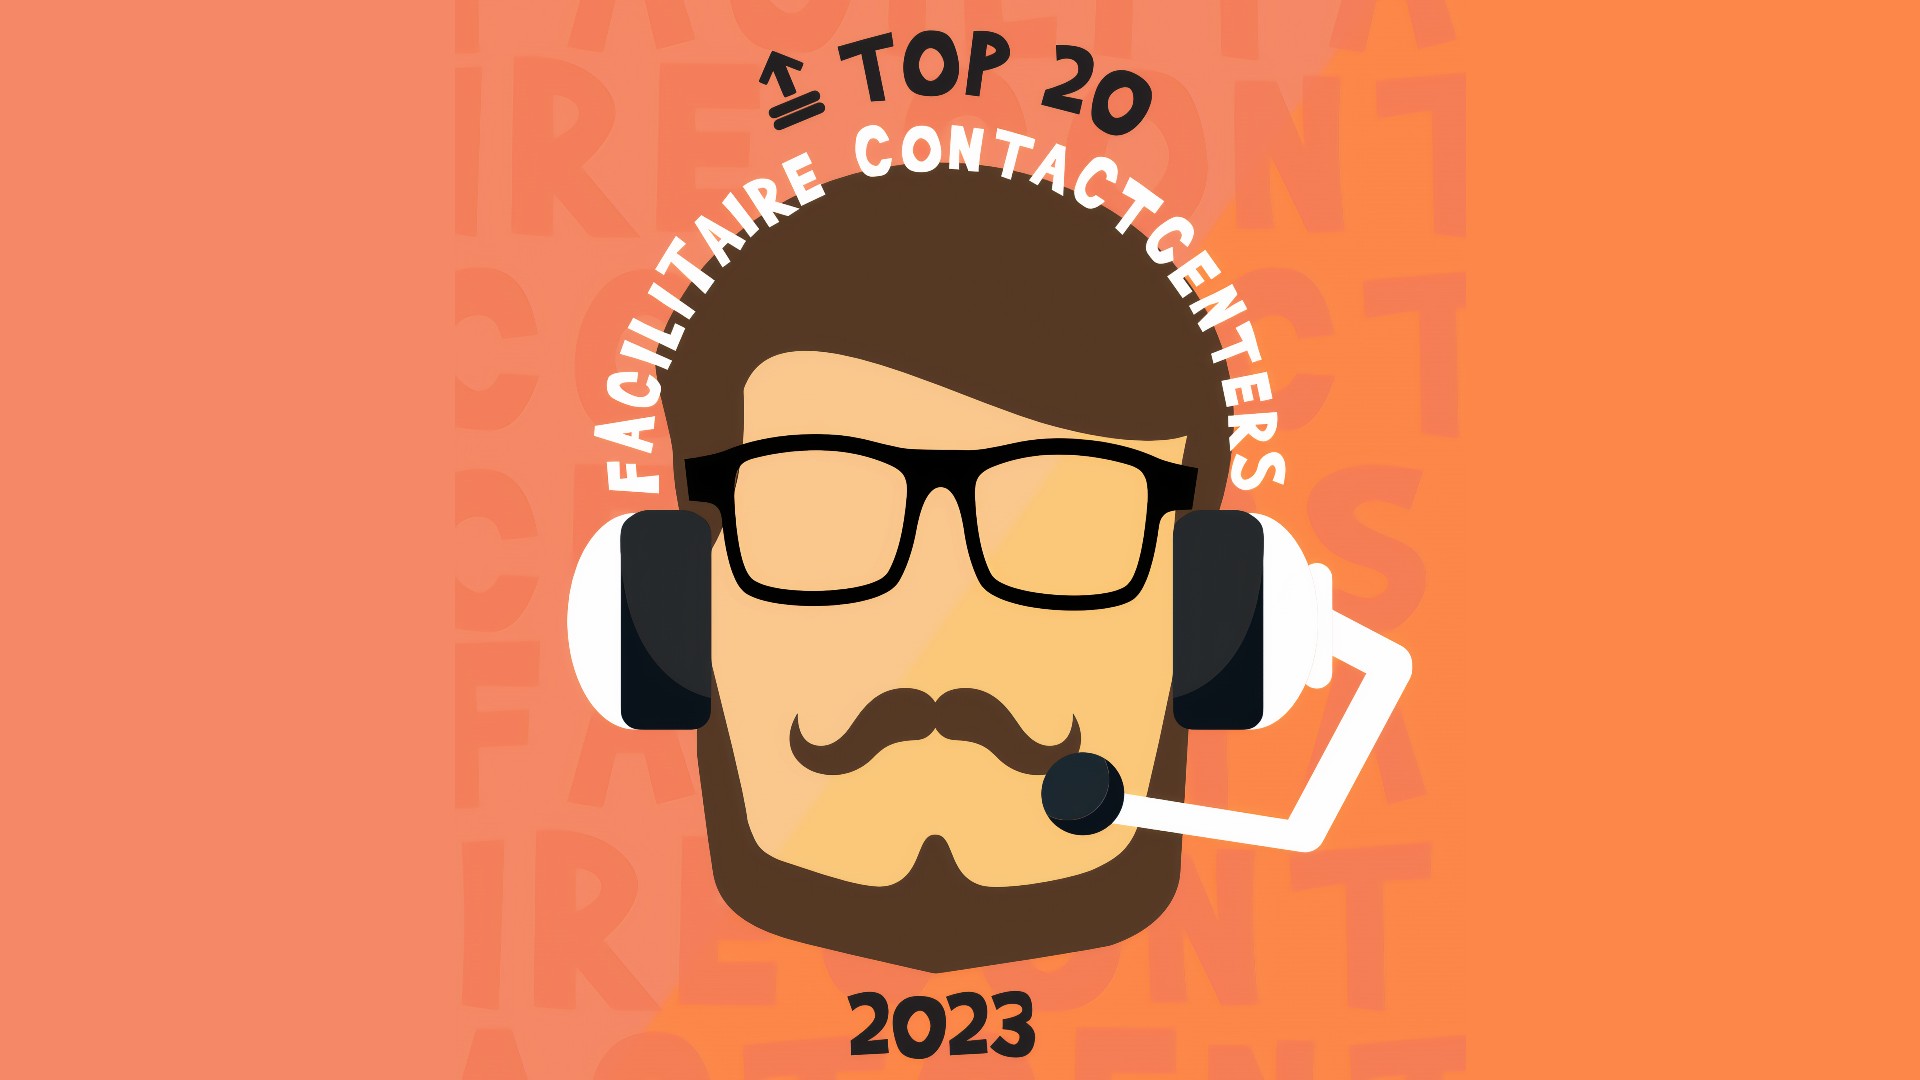 Top 20 Facilitaire Contactcenters 2023: nieuwe nummer 1, opnieuw verlies totaalomzet